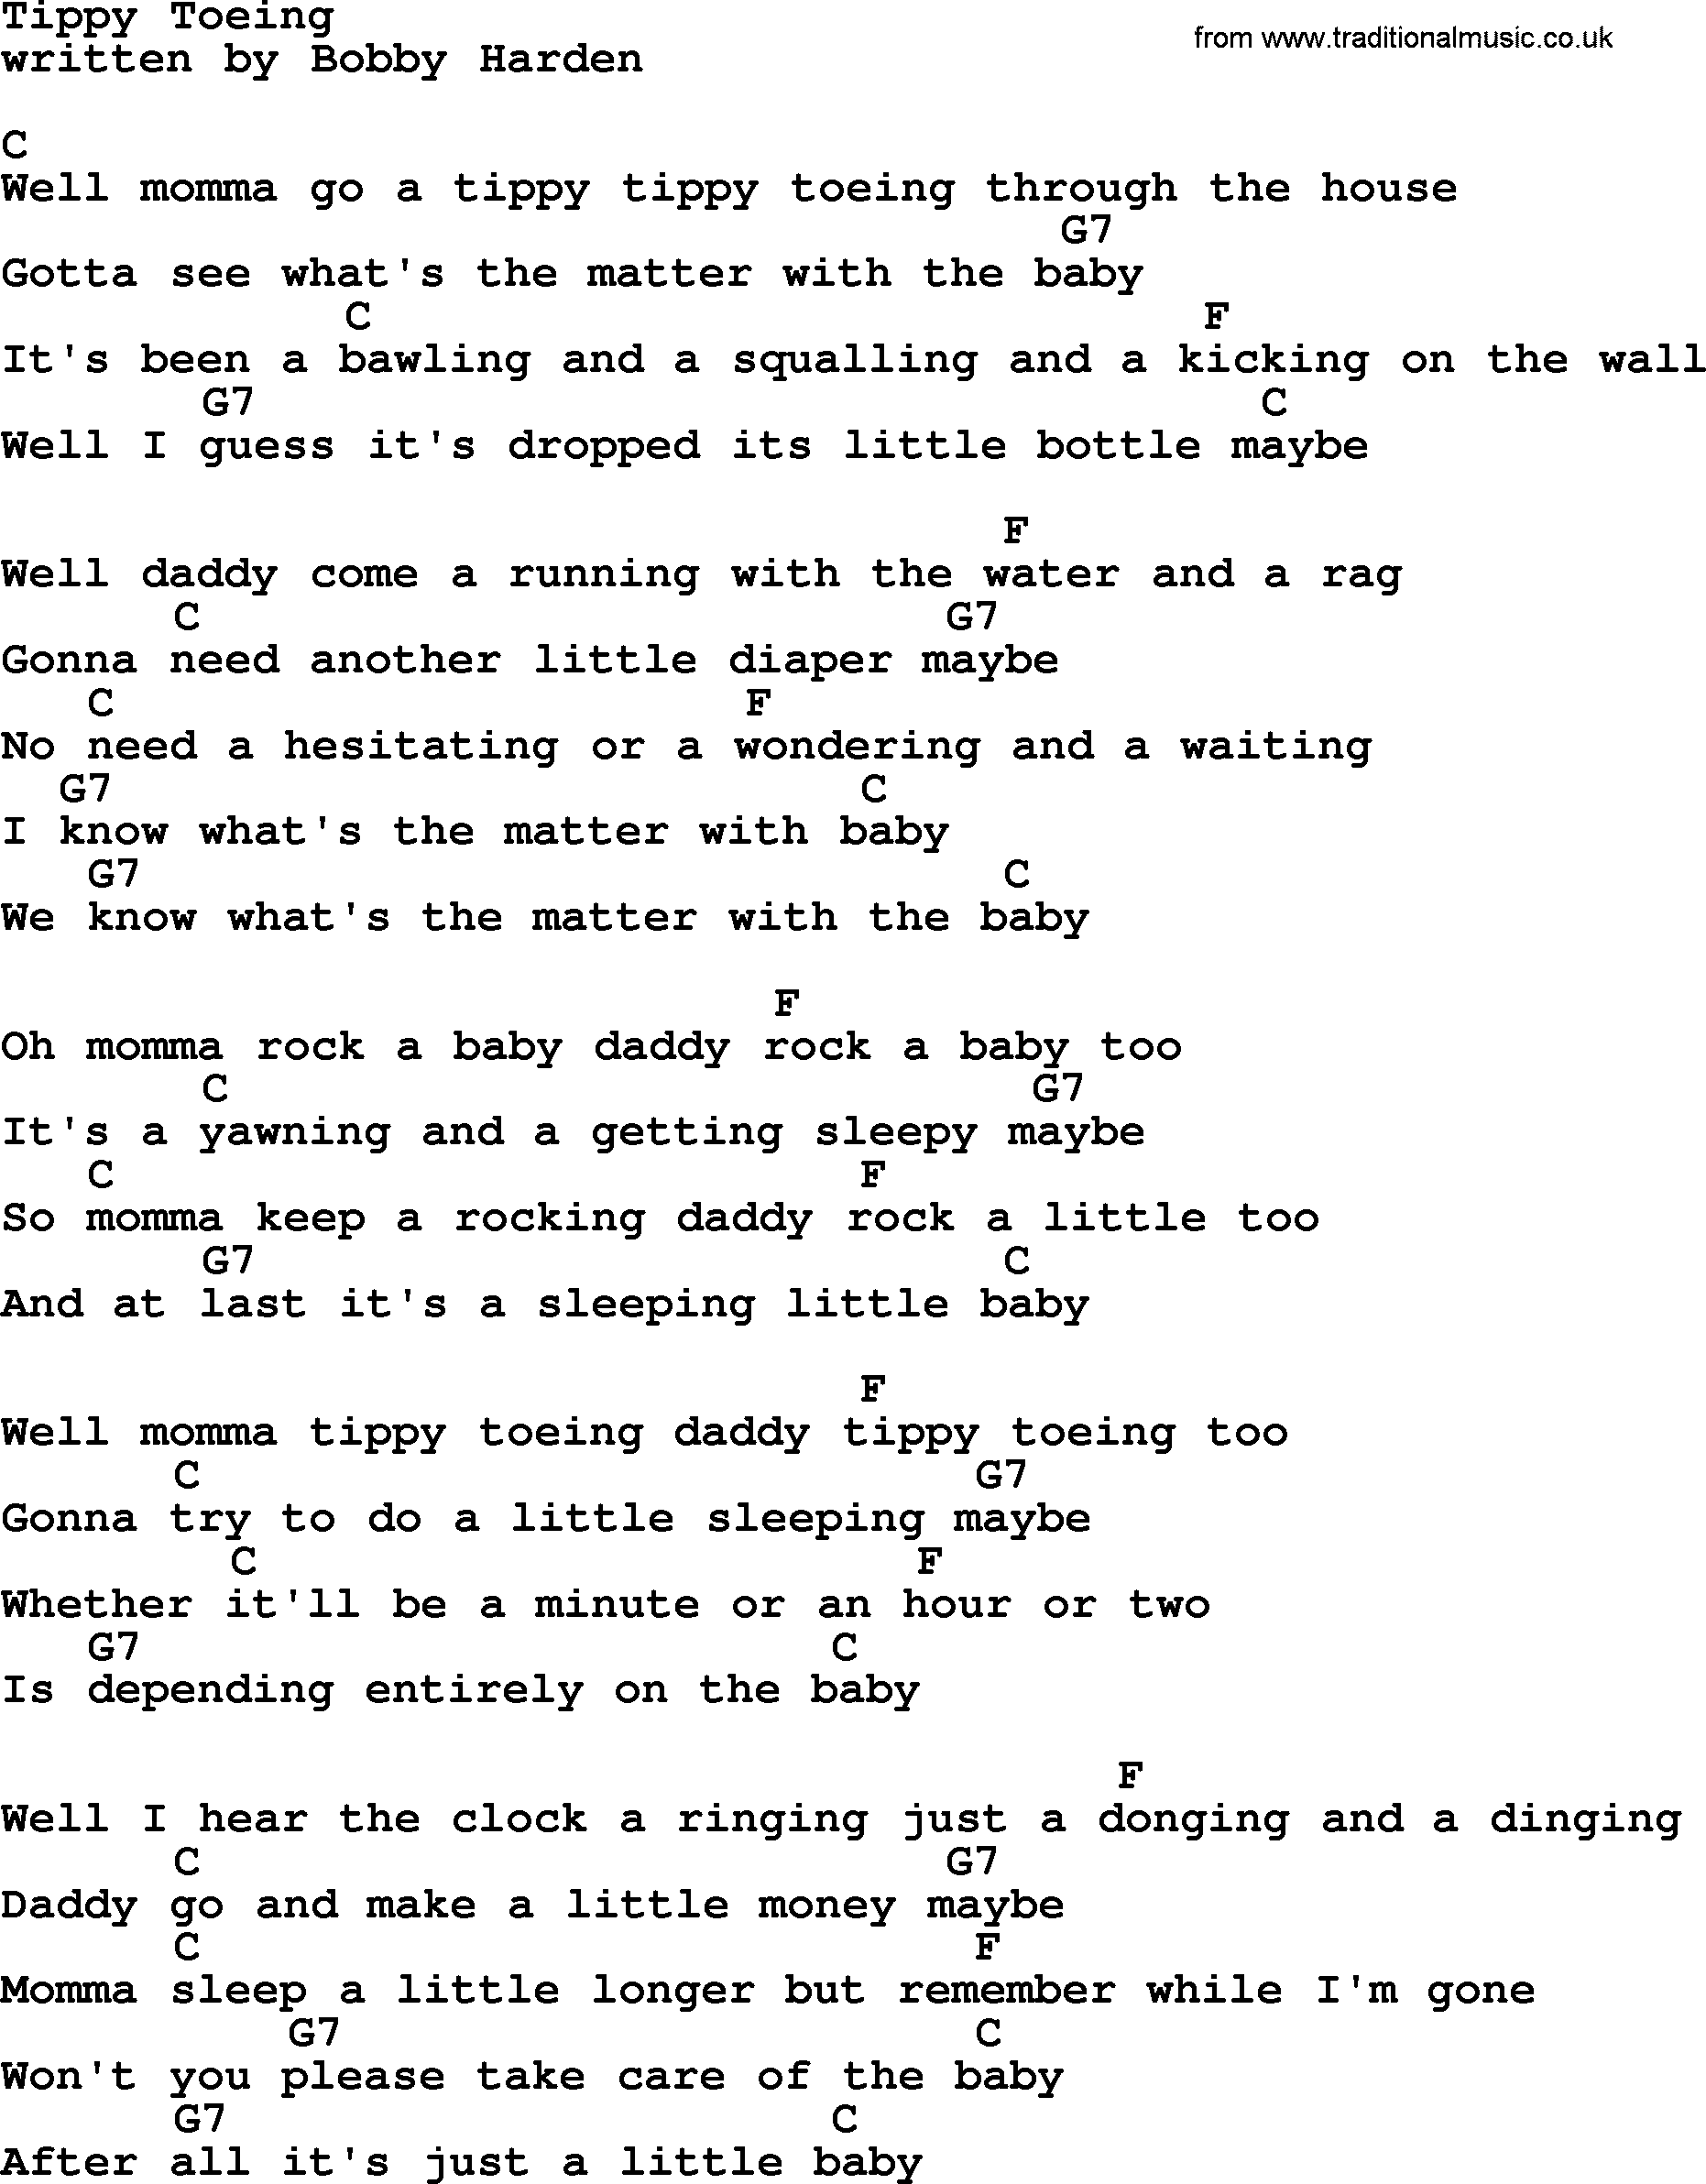 Loretta Lynn song: Tippy Toeing lyrics and chords